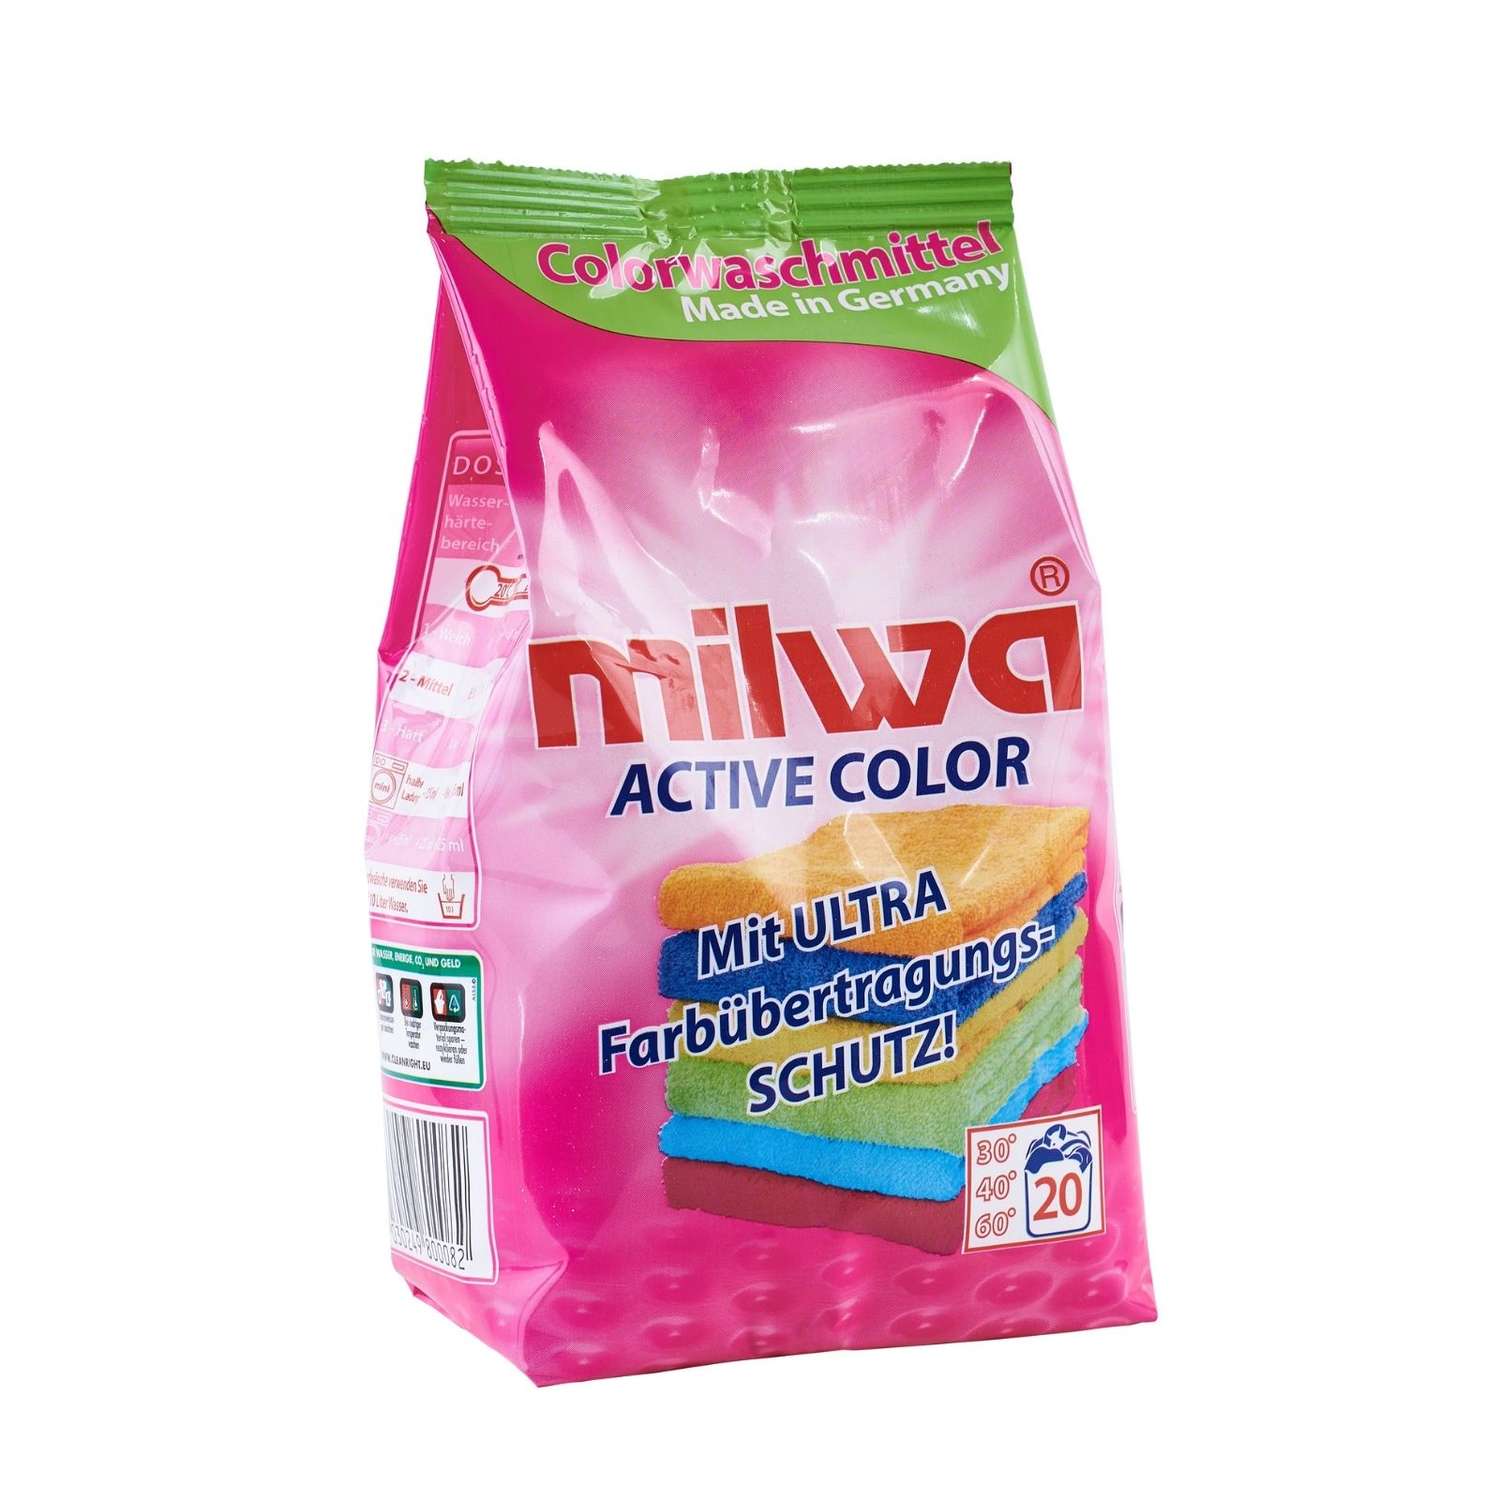 Стиральный порошок Milwa Active Color для цветного белья концентрированный 1.34 кг - фото 2